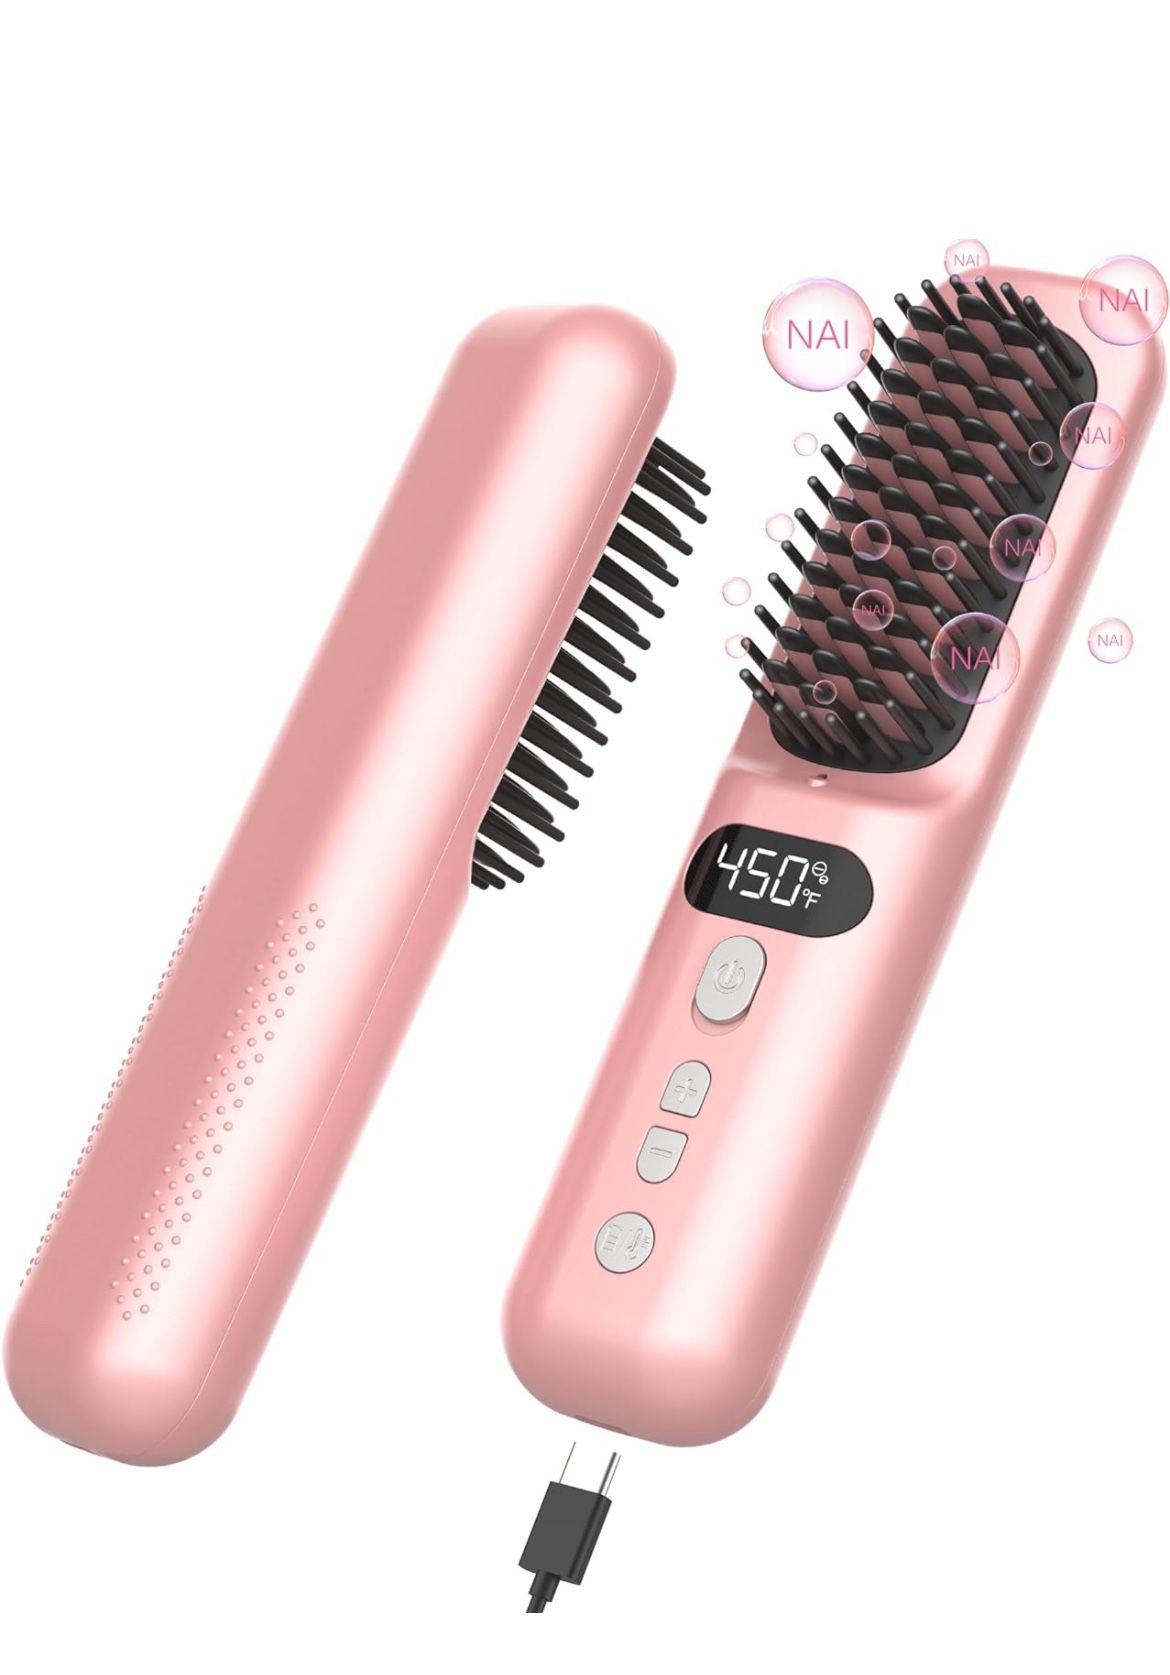 Wireless Hair Straightener Curler Brush - Titanium Ceramic and Negative Ion,l